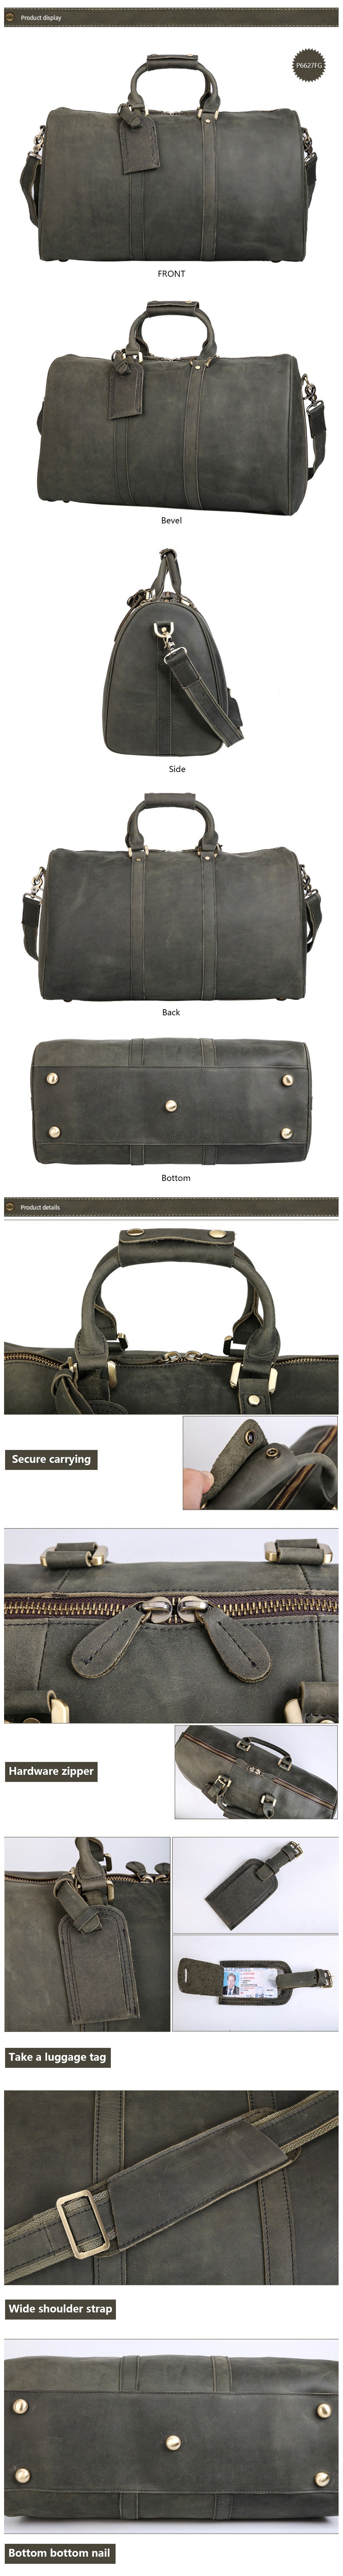 Produktpräsentation der handgefertigten Woosir-Reisetasche aus Vollnarbenleder